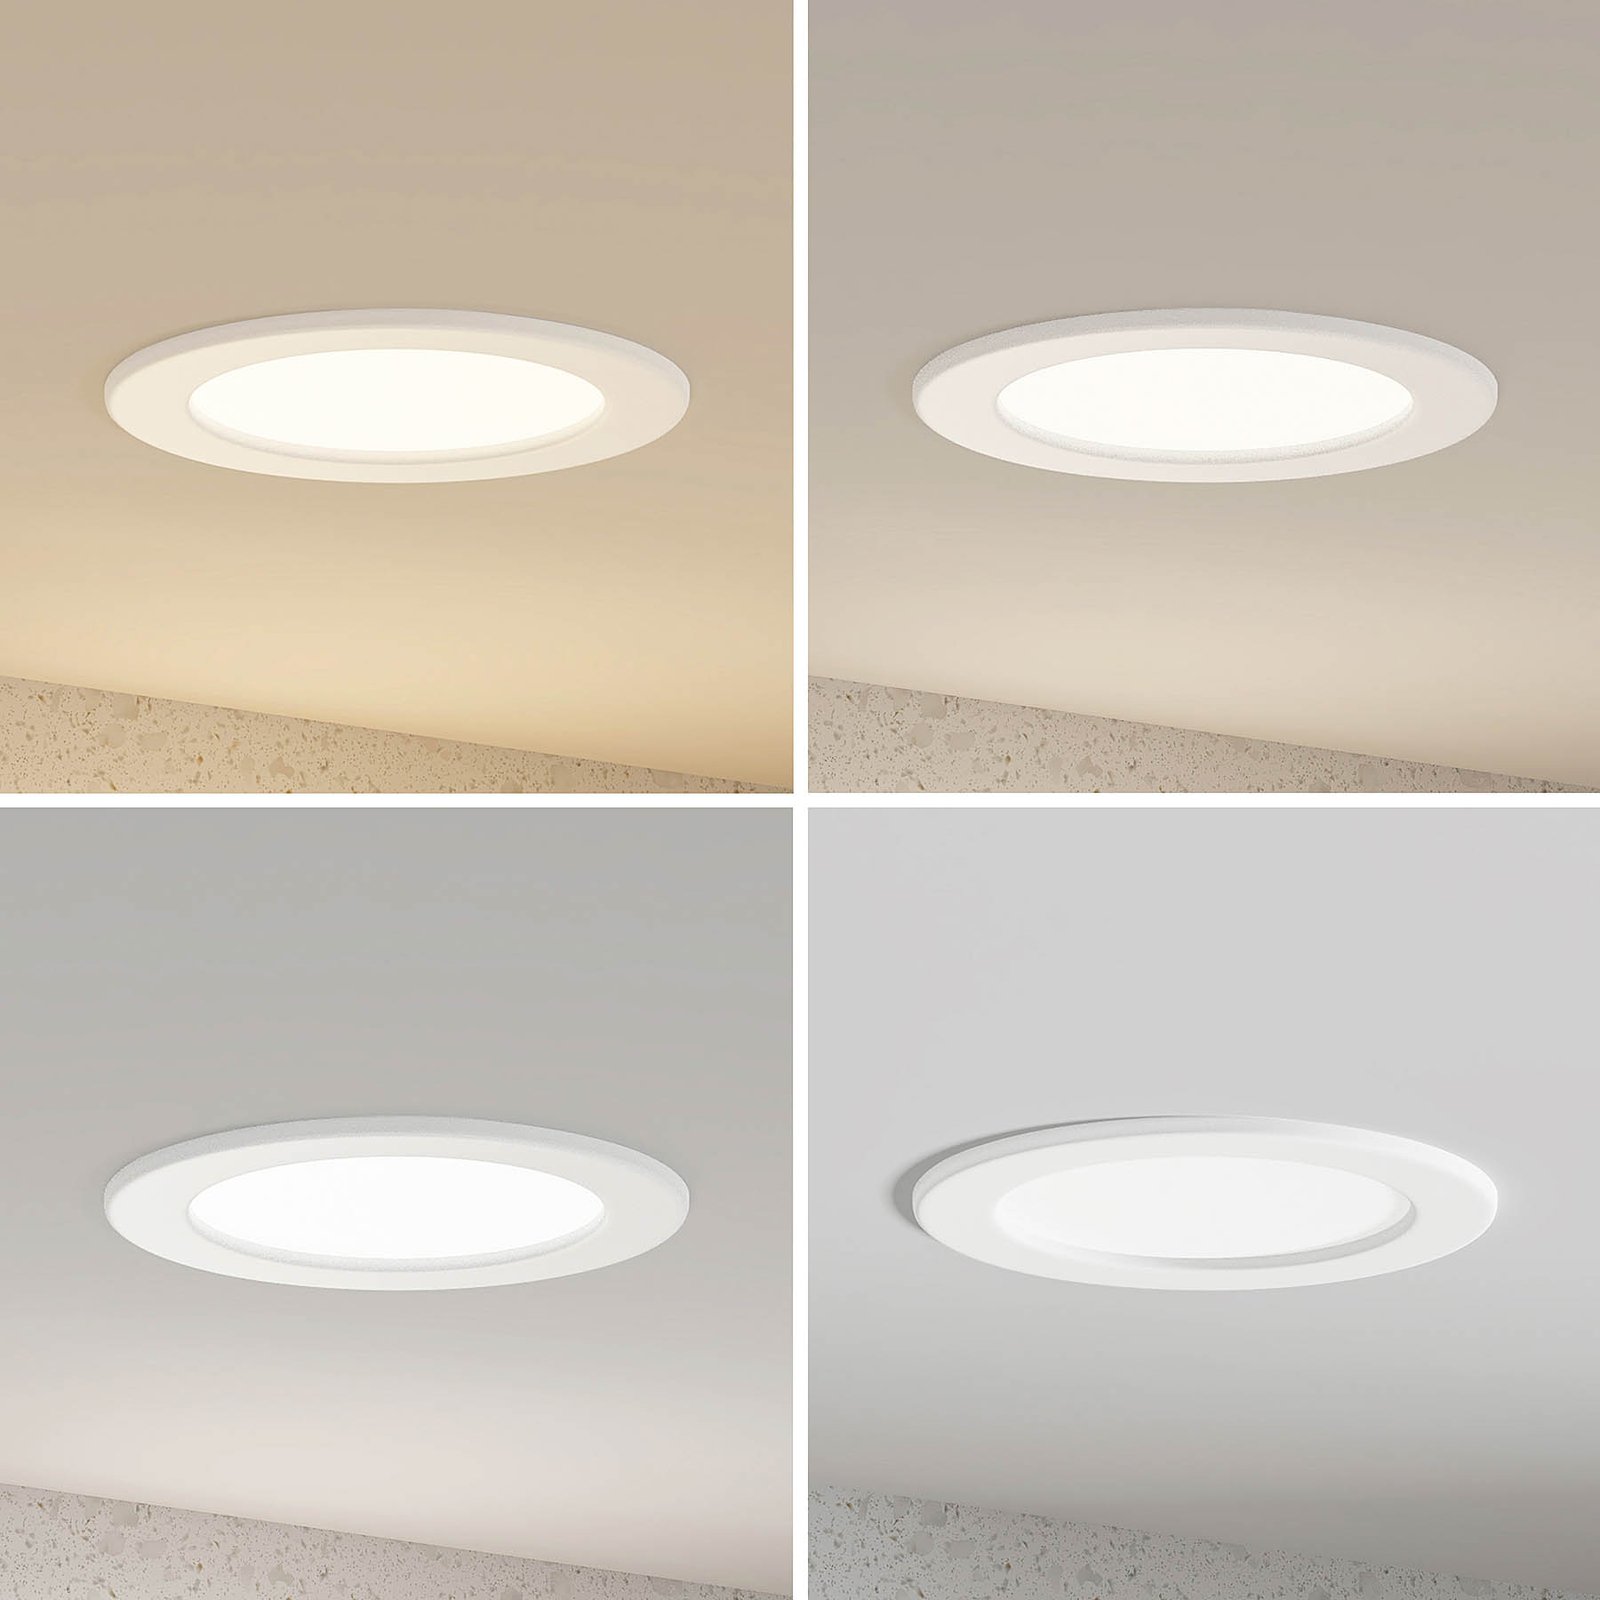 Prios Cadance LED-Einbaulampe, weiß, 17 cm